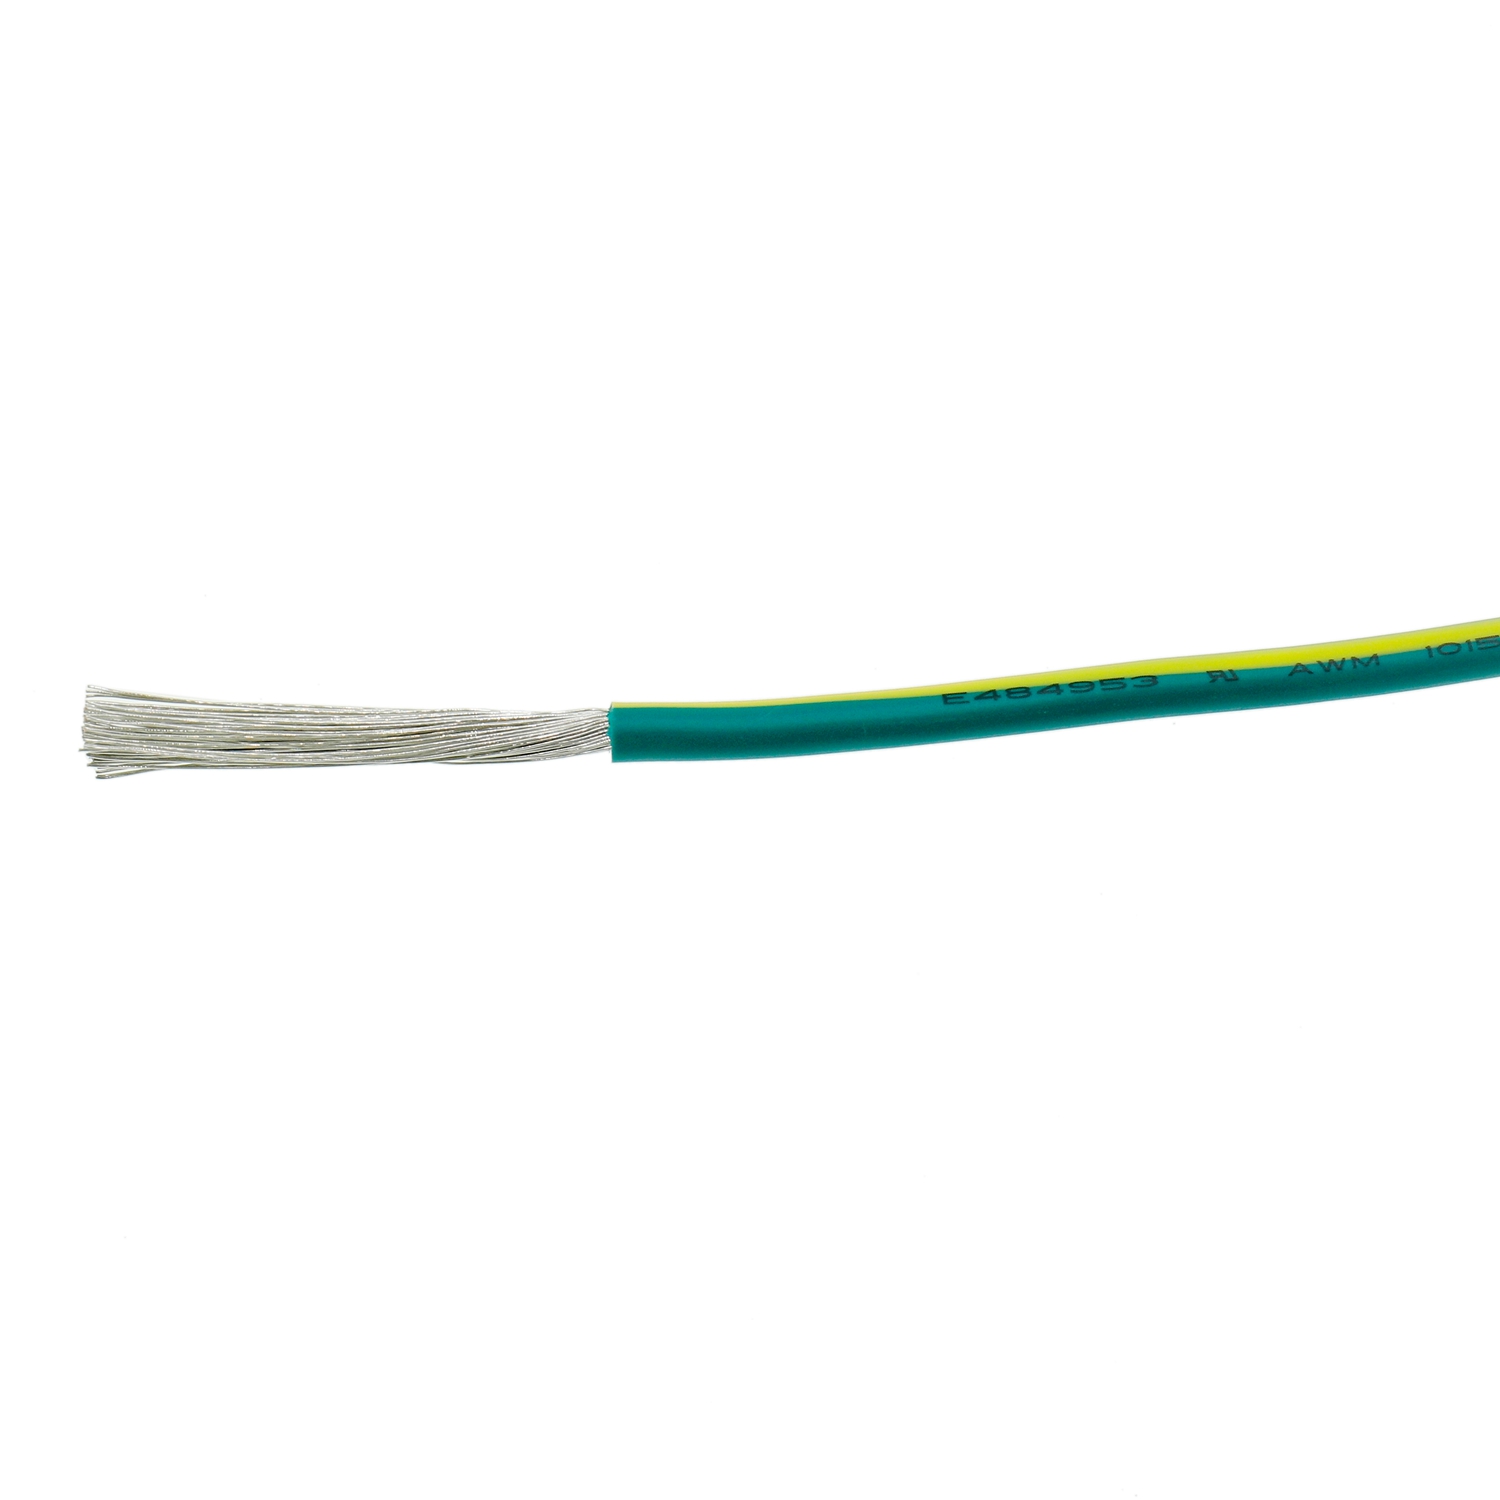 UL1015 8AWG Электрический силовой кабель Желтый Зеленый Низкое напряжение